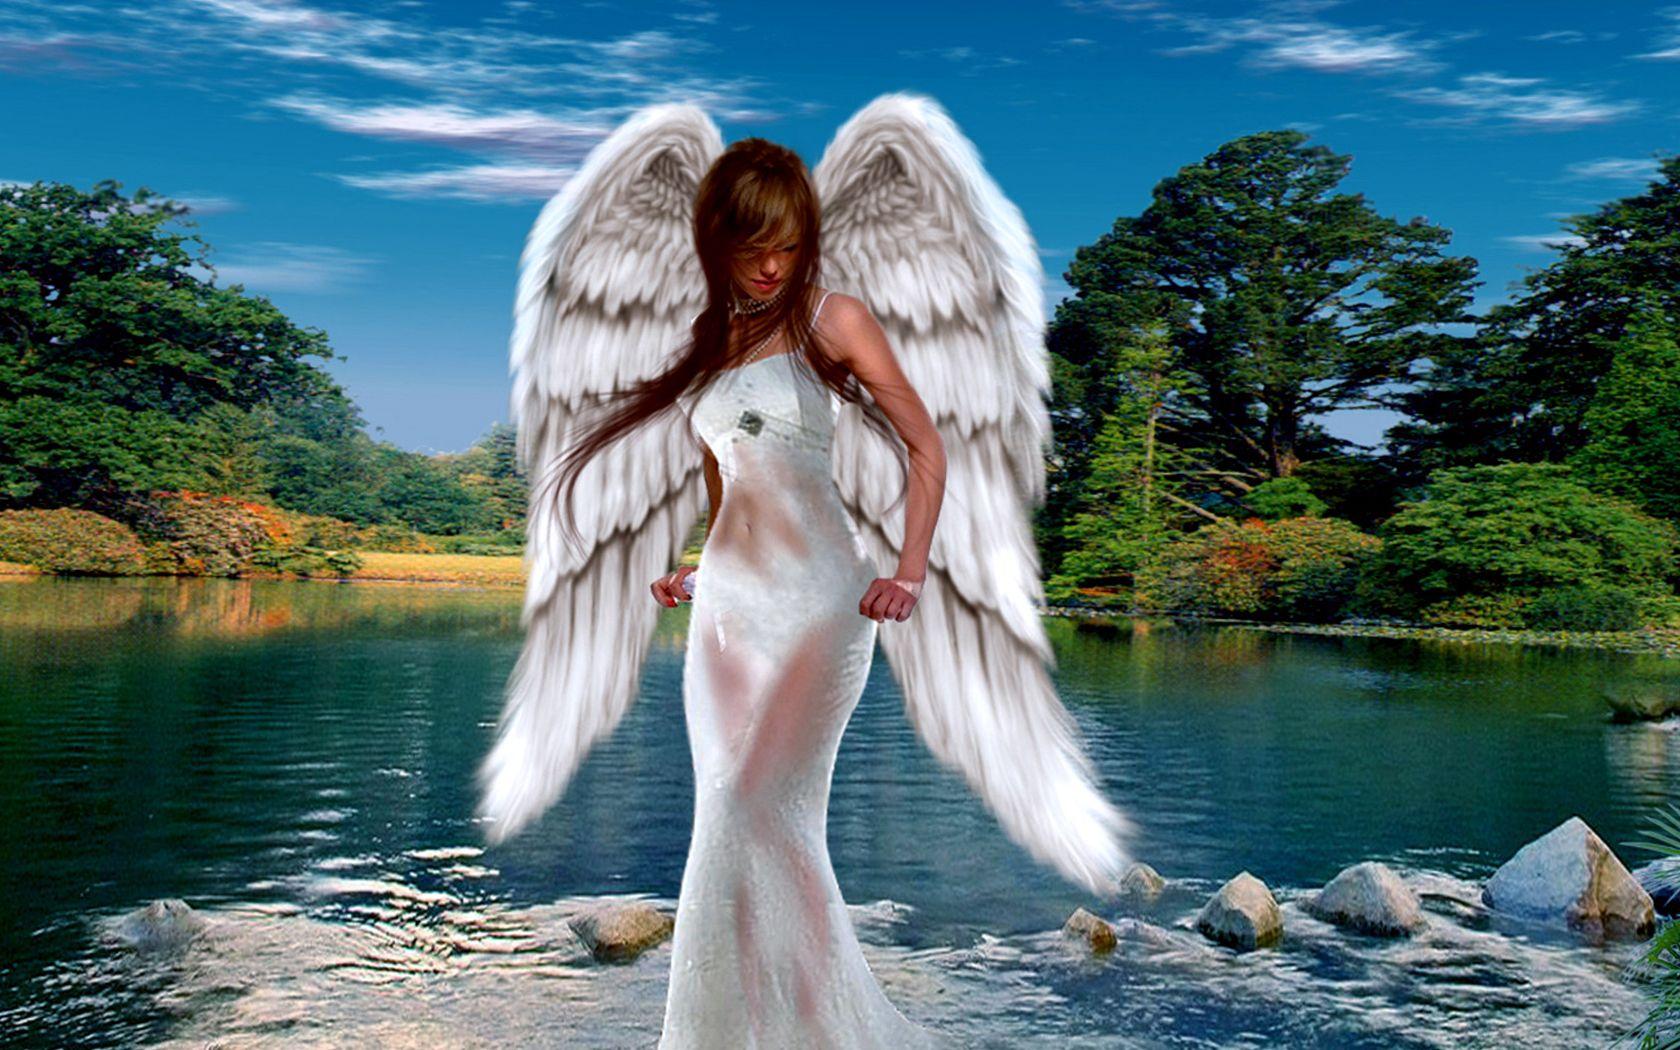 Loving angels. Девушка - ангел. Красивый ангел. Дева с крыльями. Красивые ангелочки.